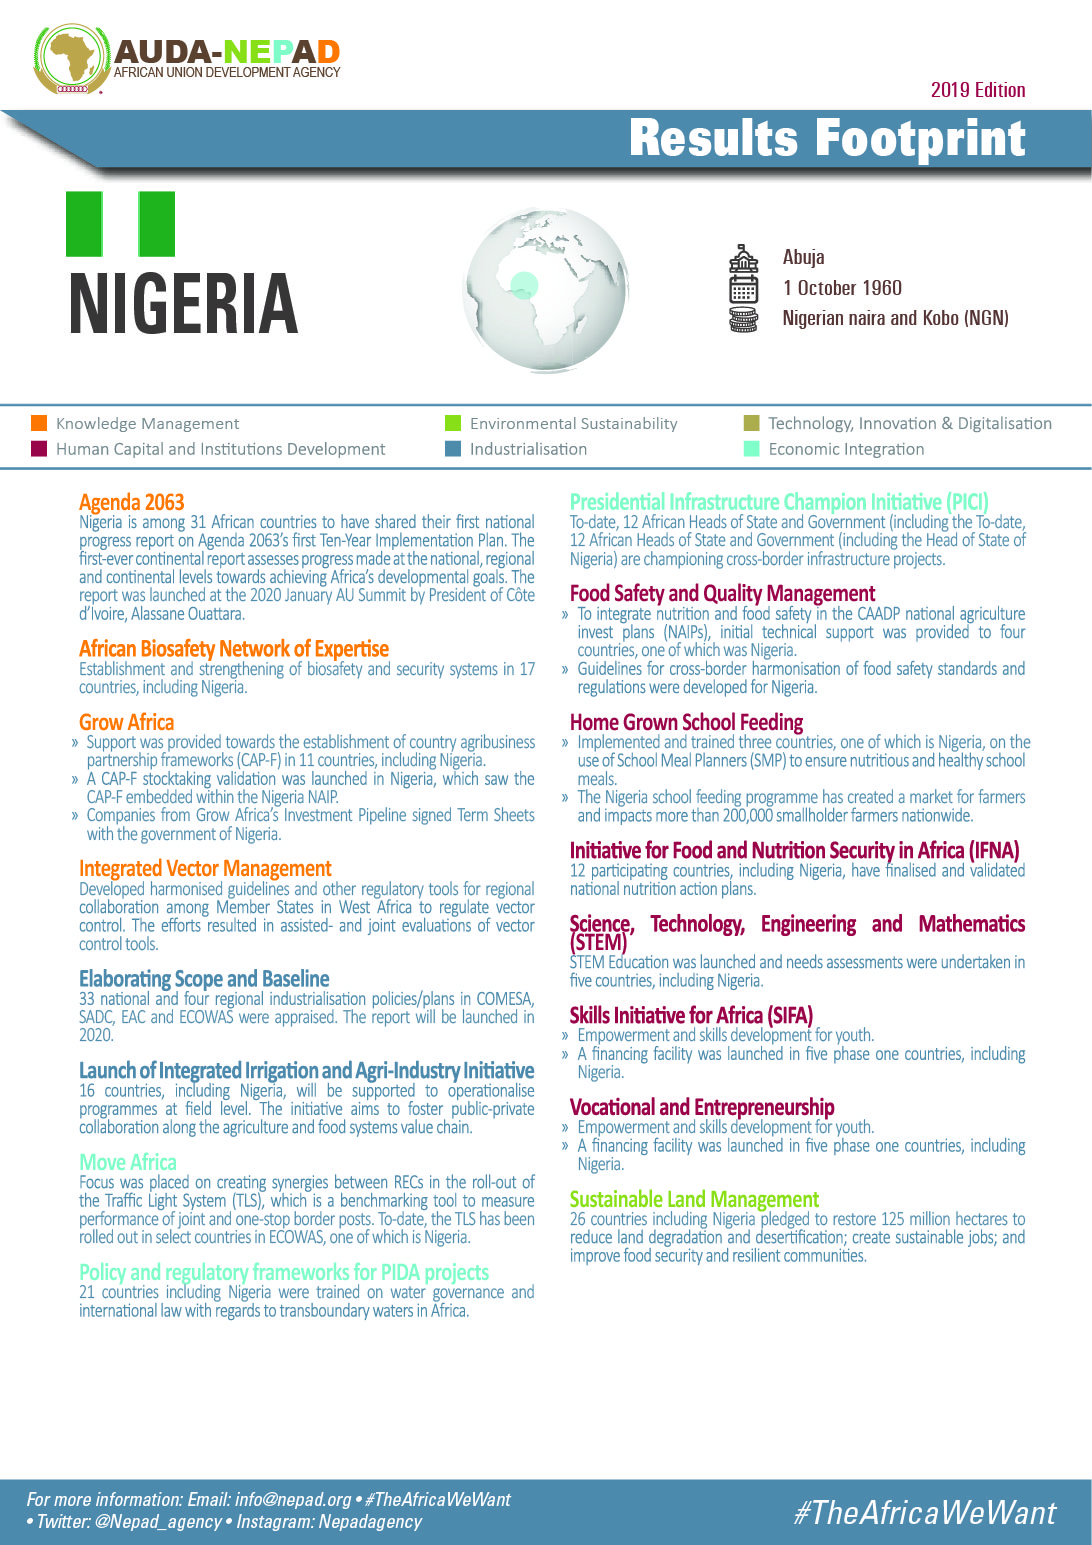 2019 AUDA-NEPAD Footprint: Country Profiles: Nigeria